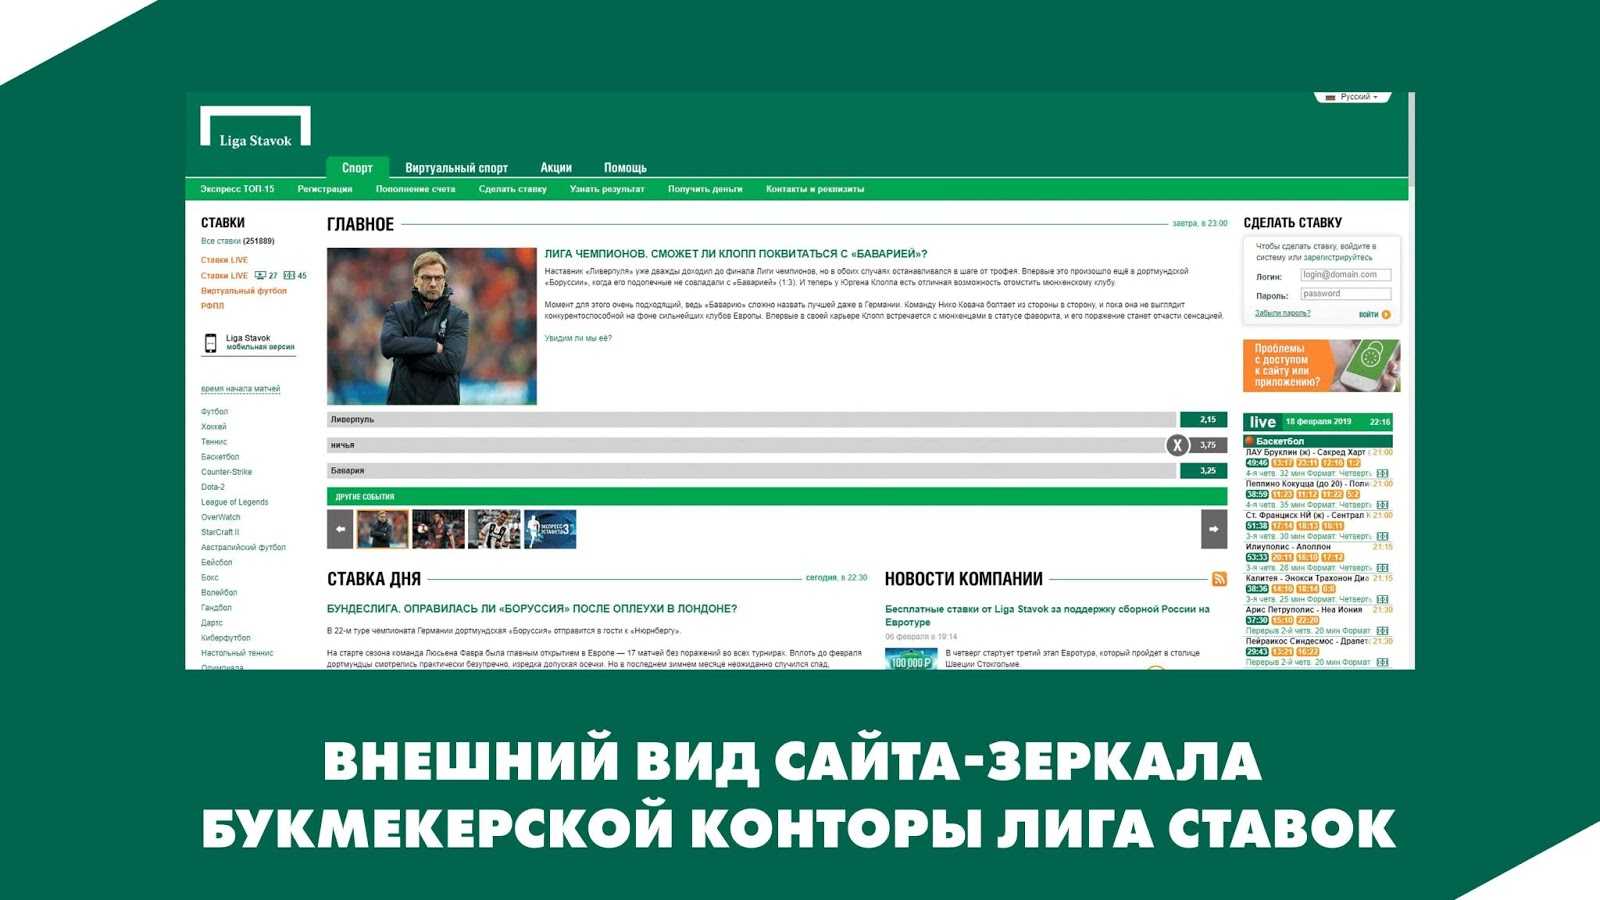 Внешний вид сайта-зеркала букмекерской конторы LigaStavok.com